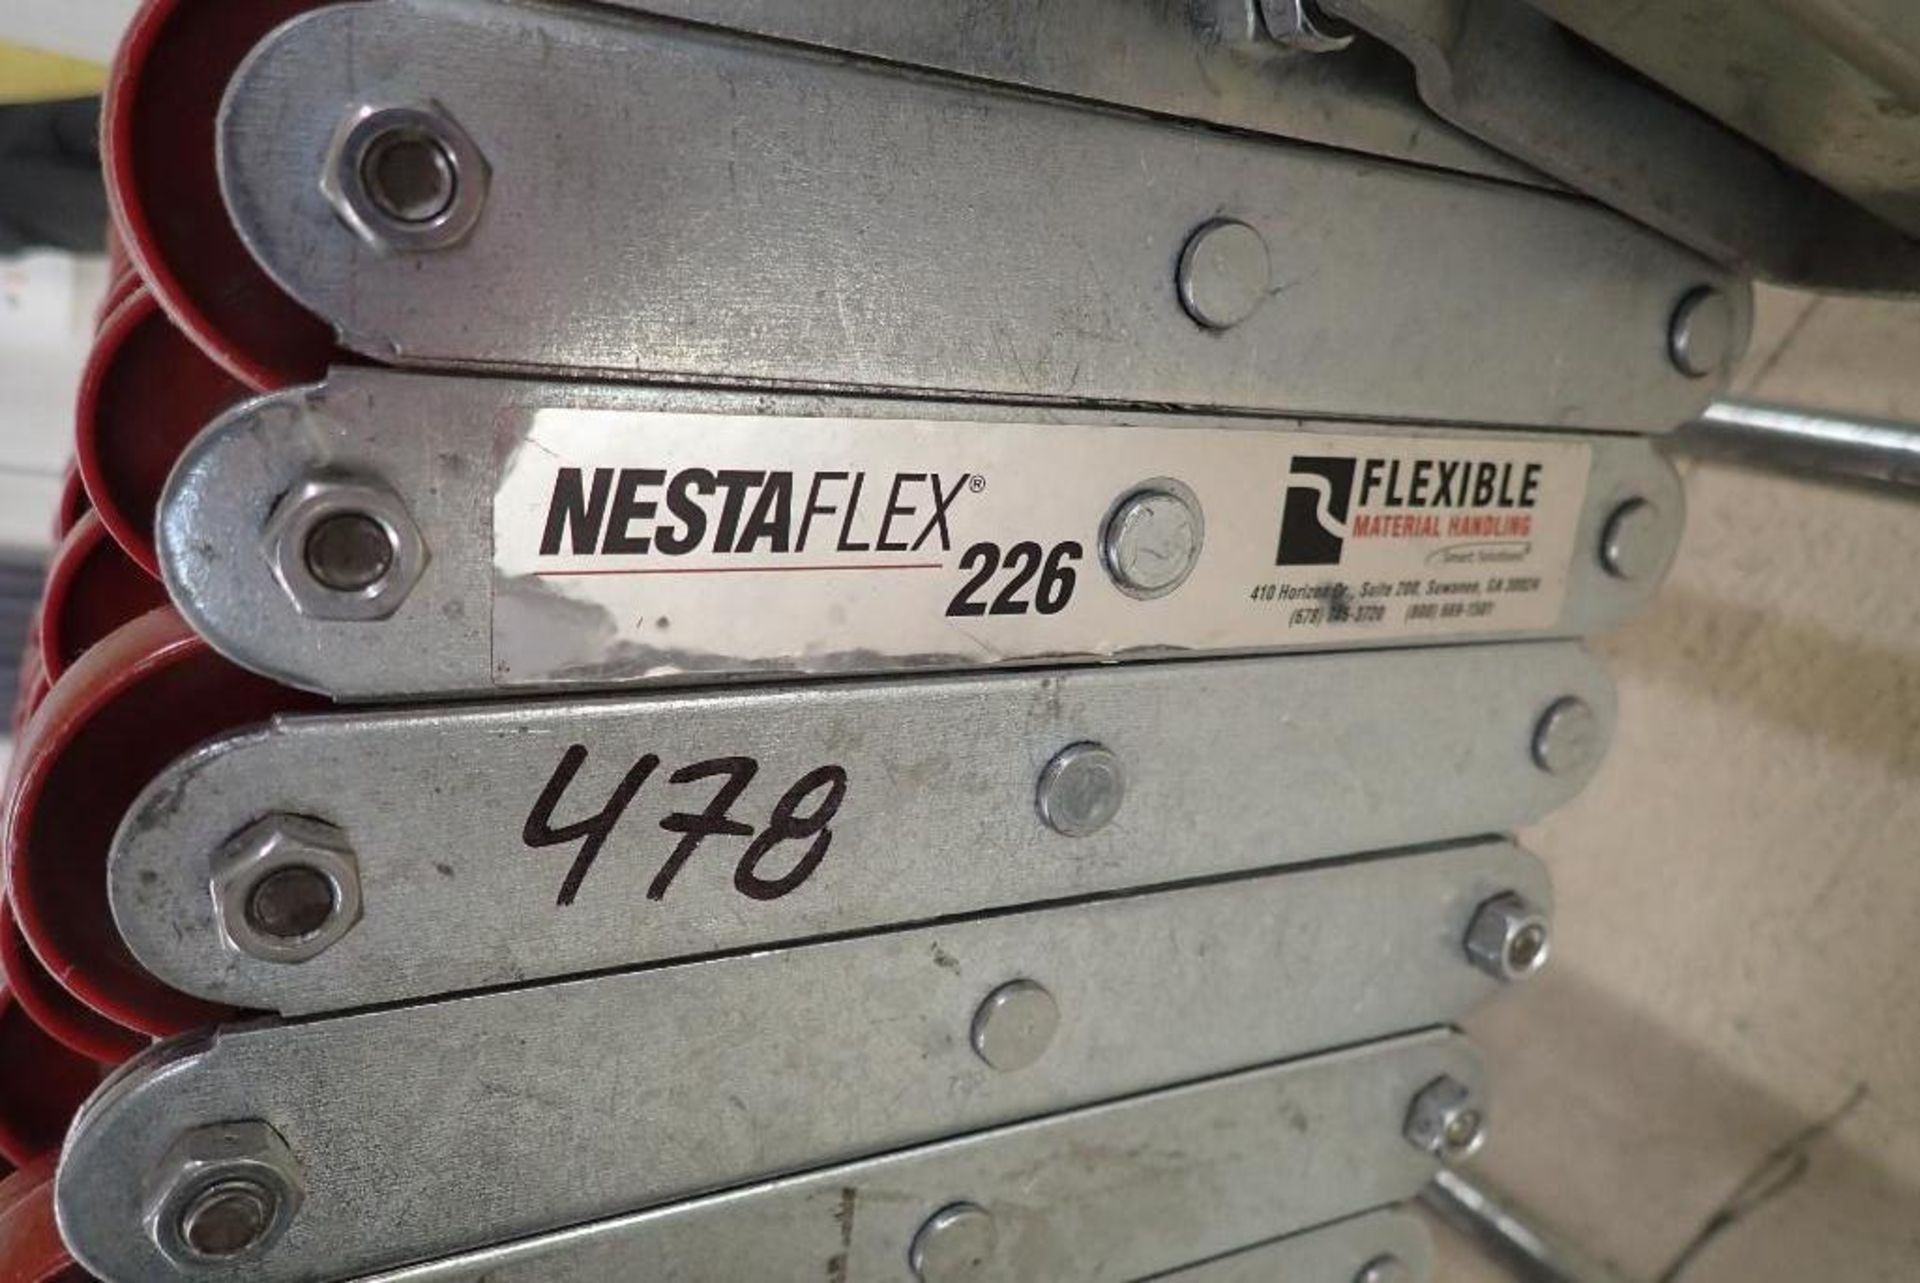 Nestaflex 226 flexible skate conveyor - Image 5 of 5